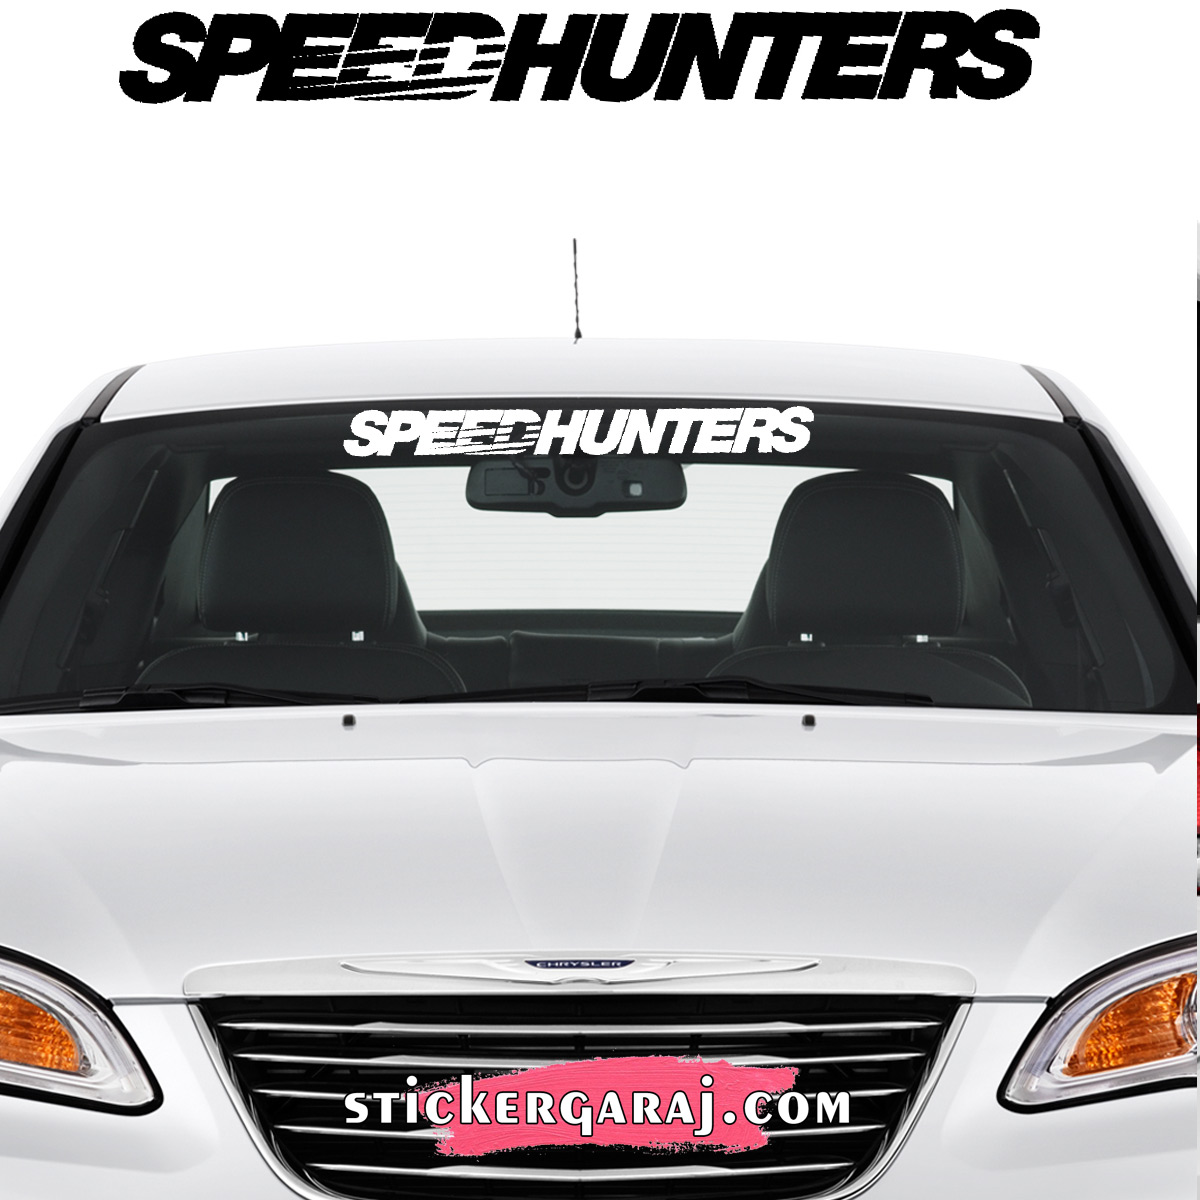 Seat oto sticker 1 - Seat cam sticker - speedhunters